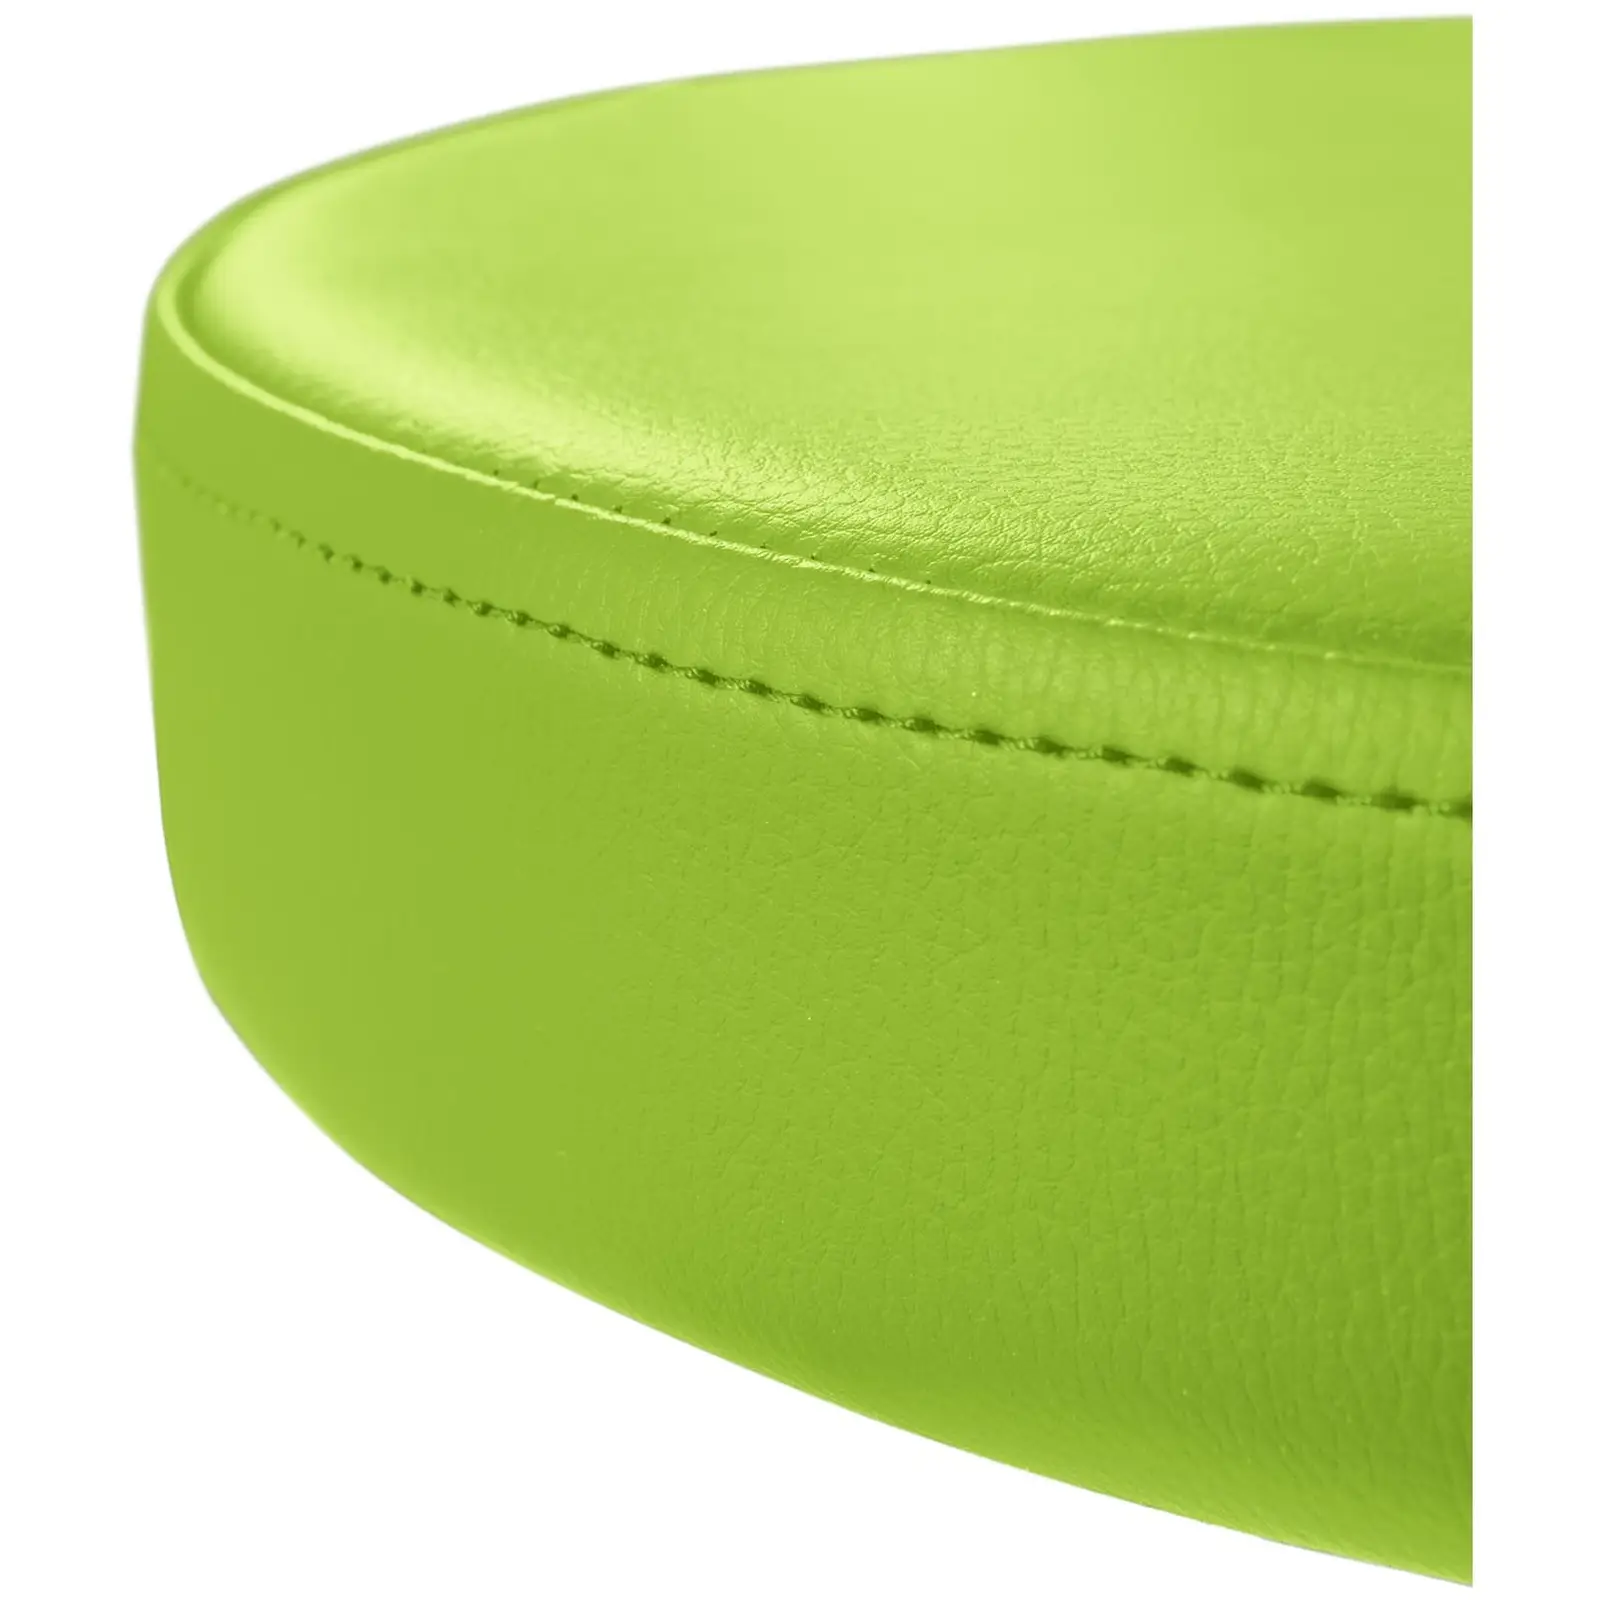 Krzesło kosmetyczne - 445 - 580 mm - 150 kg - zielone